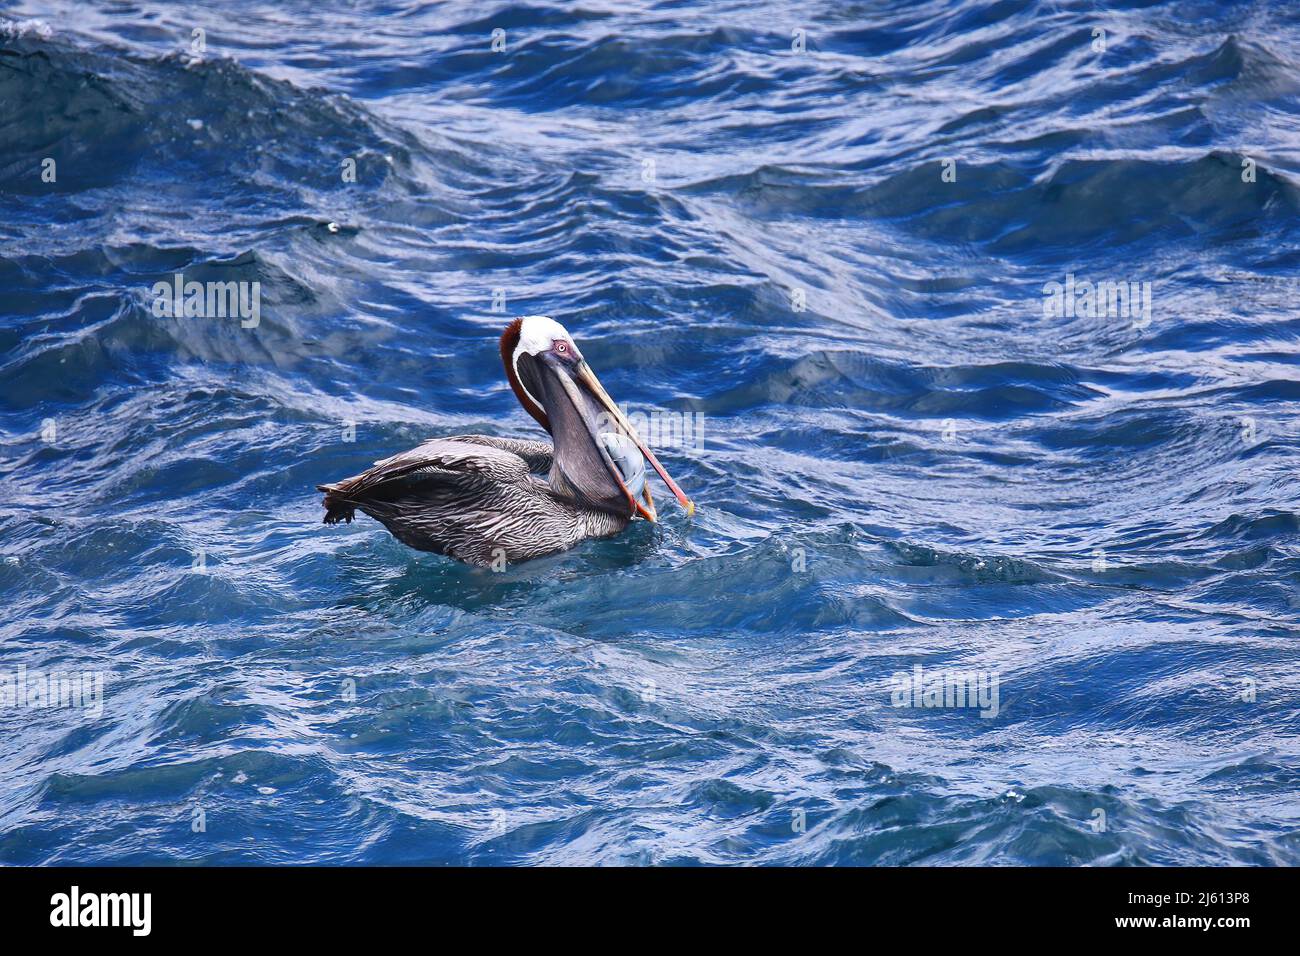 Pelican Marrón (Pelecanus occidentalis urinator) comiendo pescado, Isla South Plaza, Parque Nacional Galápagos, Ecuador. Foto de stock